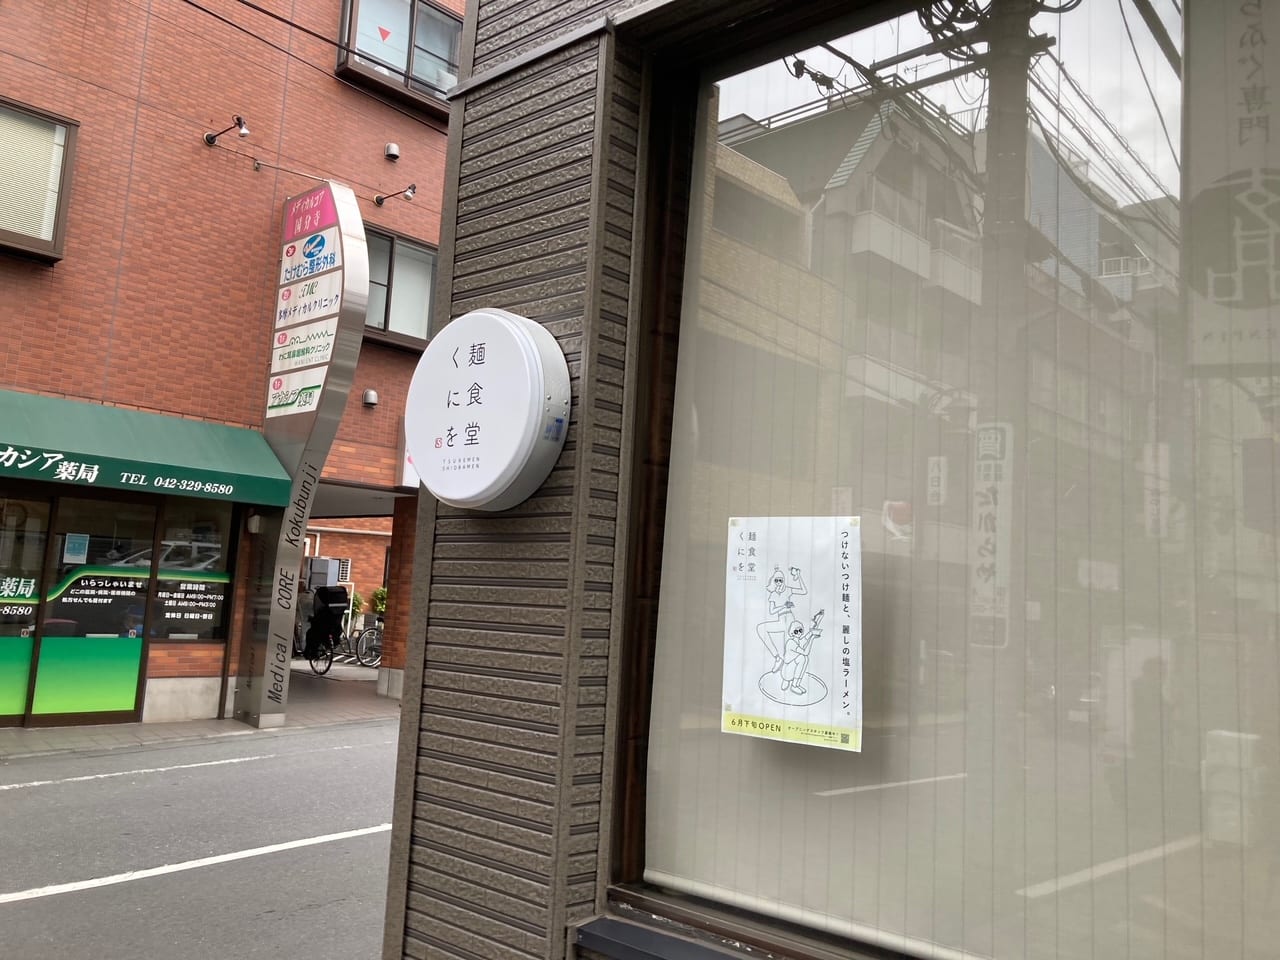 ラーメン店『ゆきふじ』の店主が移転し、新なラーメンを提供する『麺食堂くにを』7月2日オープン予定のようです！！